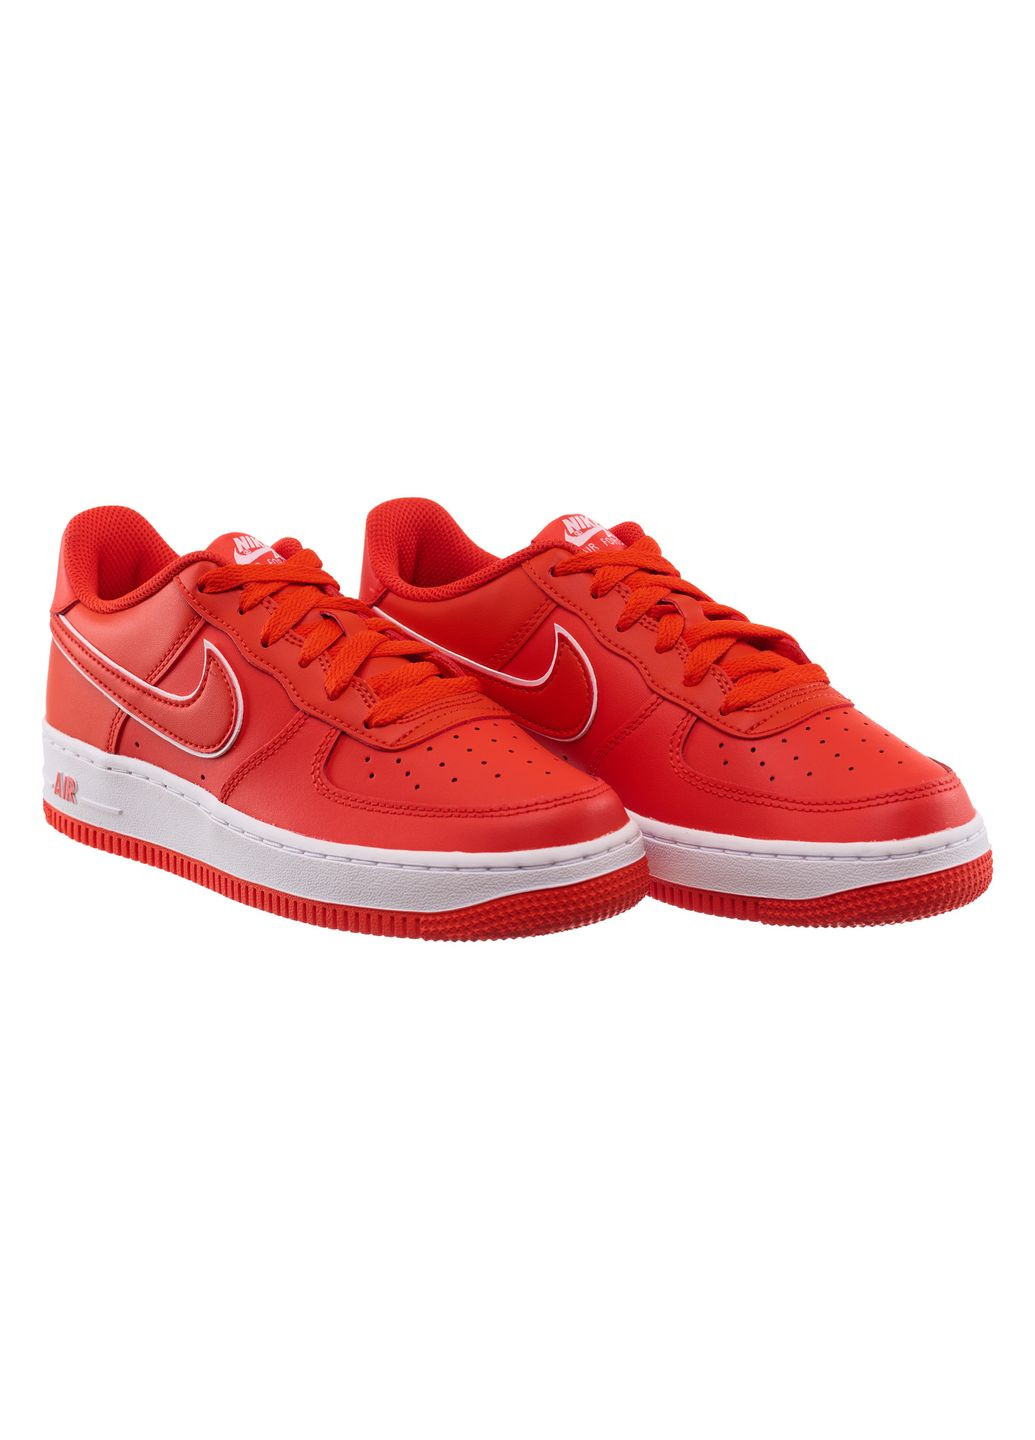 Червоні осінні кросівки підліткові air force 1 (gs) (dx5805-600) Nike